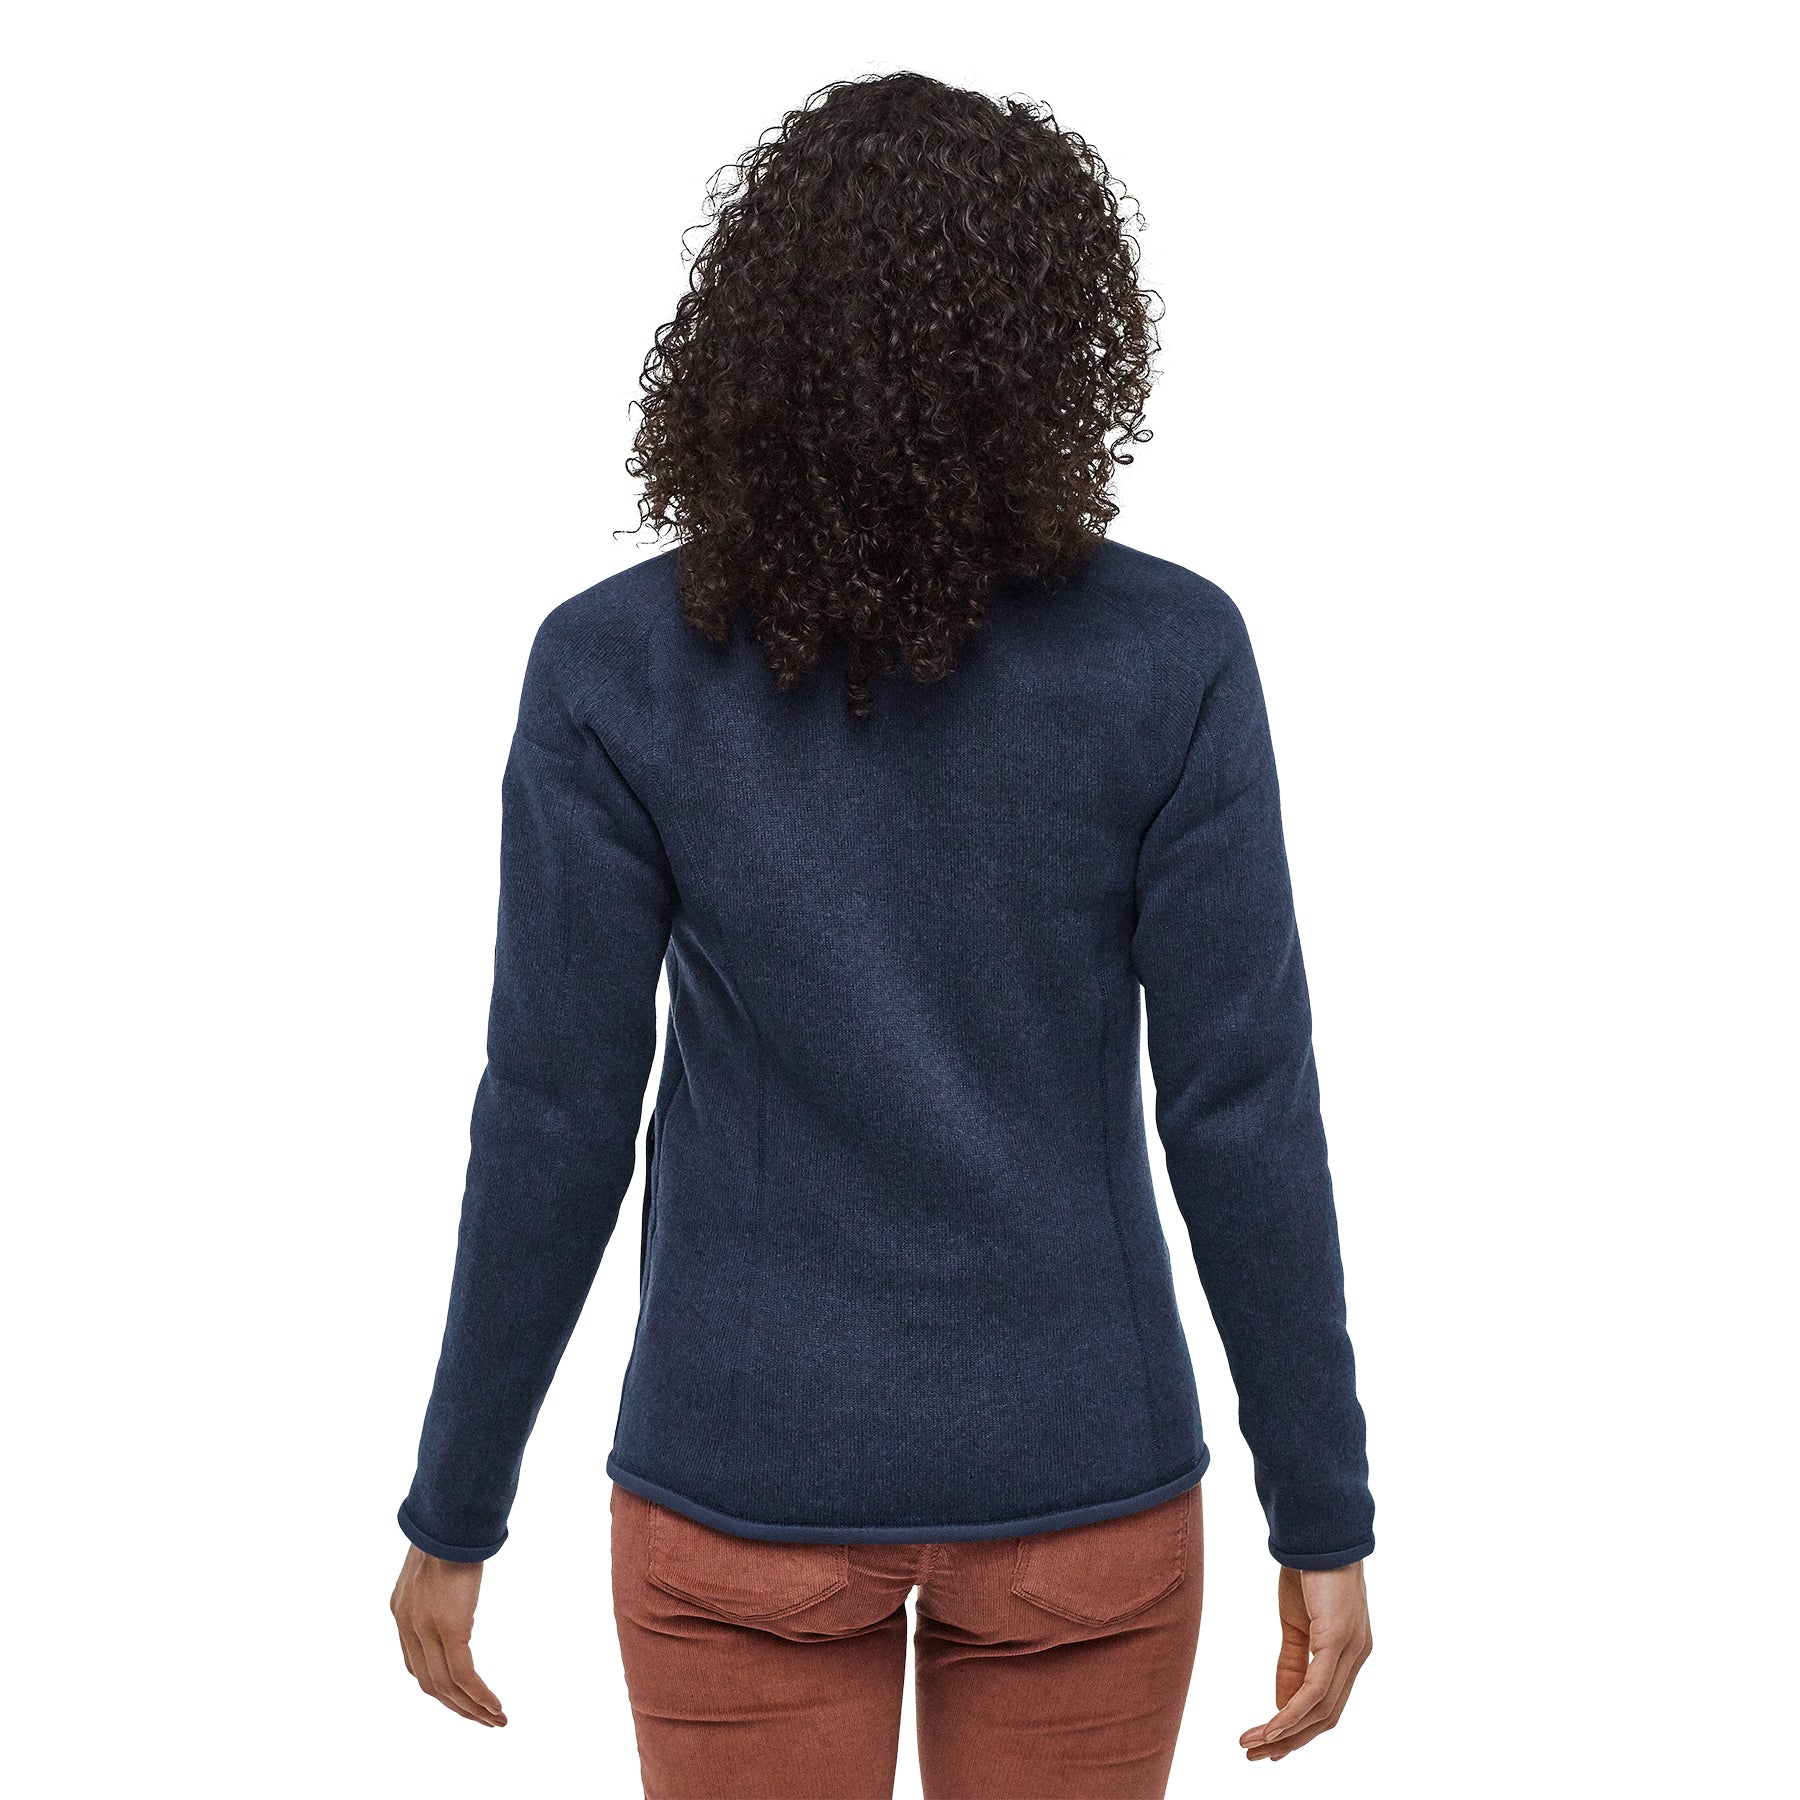 Better Sweater Fleece Jacket - Womens F23